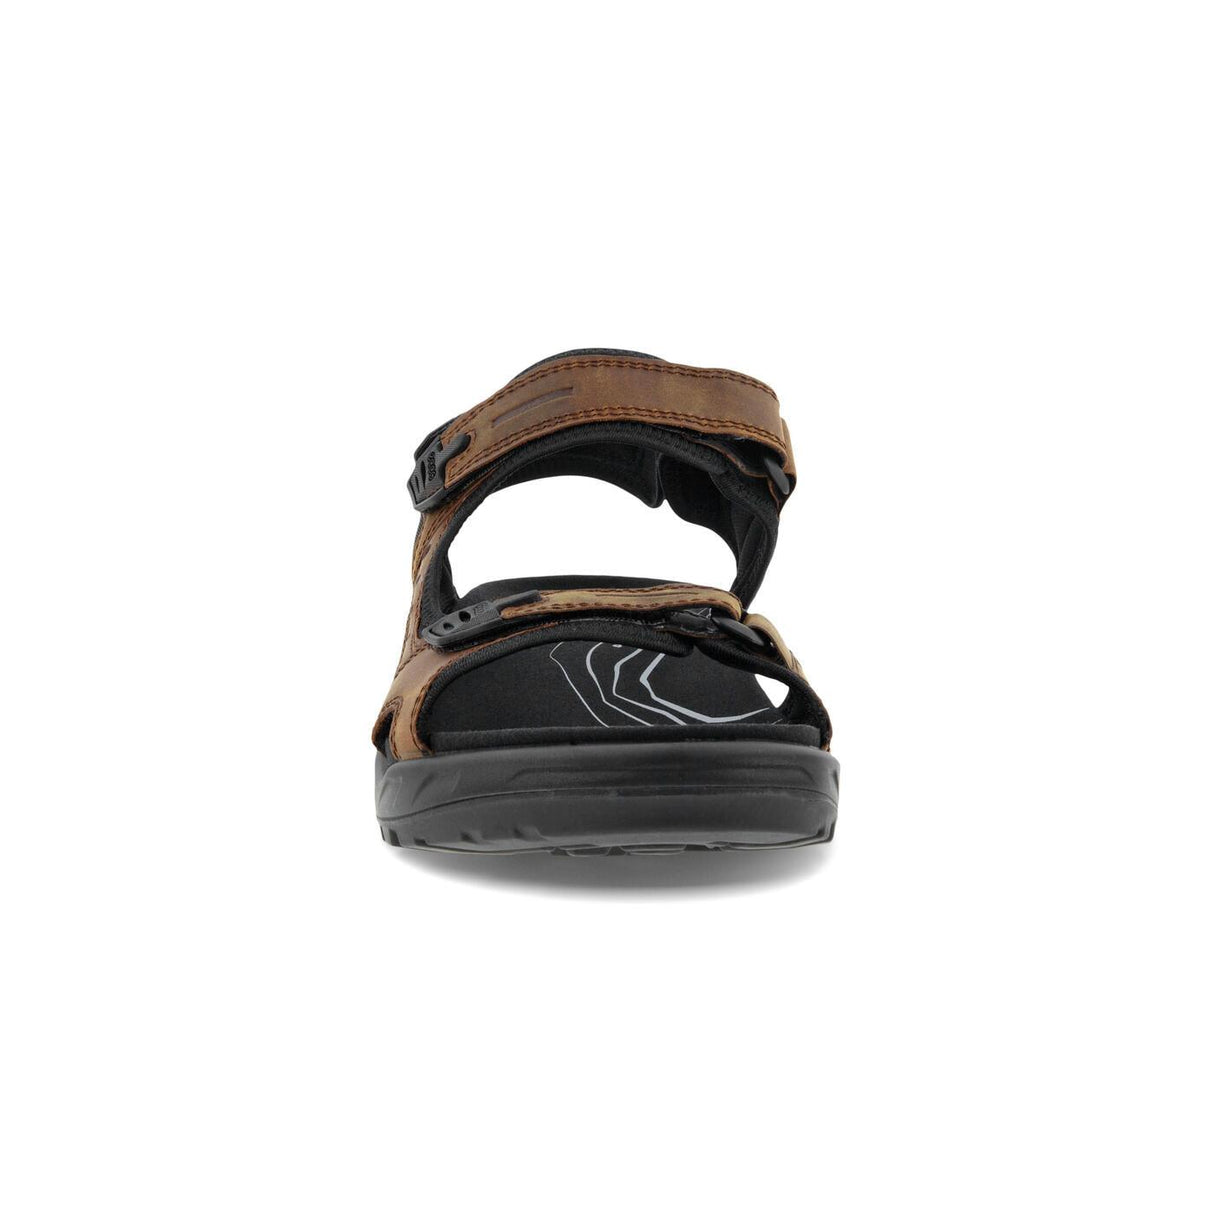 Ecco Men's Offroad Yucatan Plus Sandals - A&M Clothing & Shoes